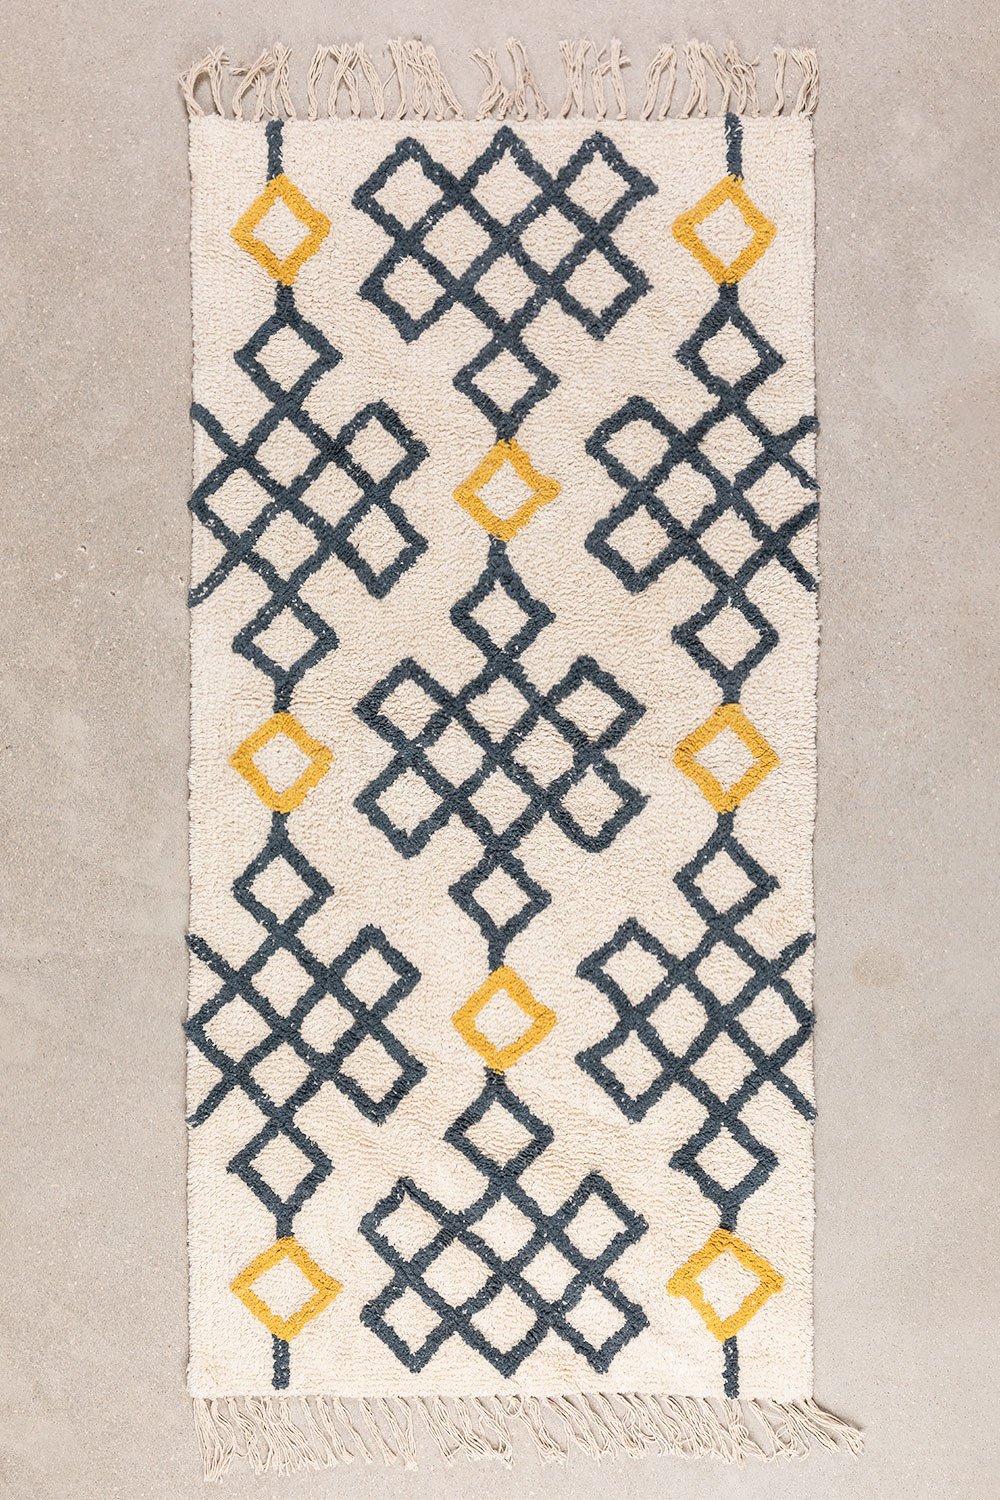 Katoenen vloerkleed (161x71 cm) Mandi, galerij beeld 1